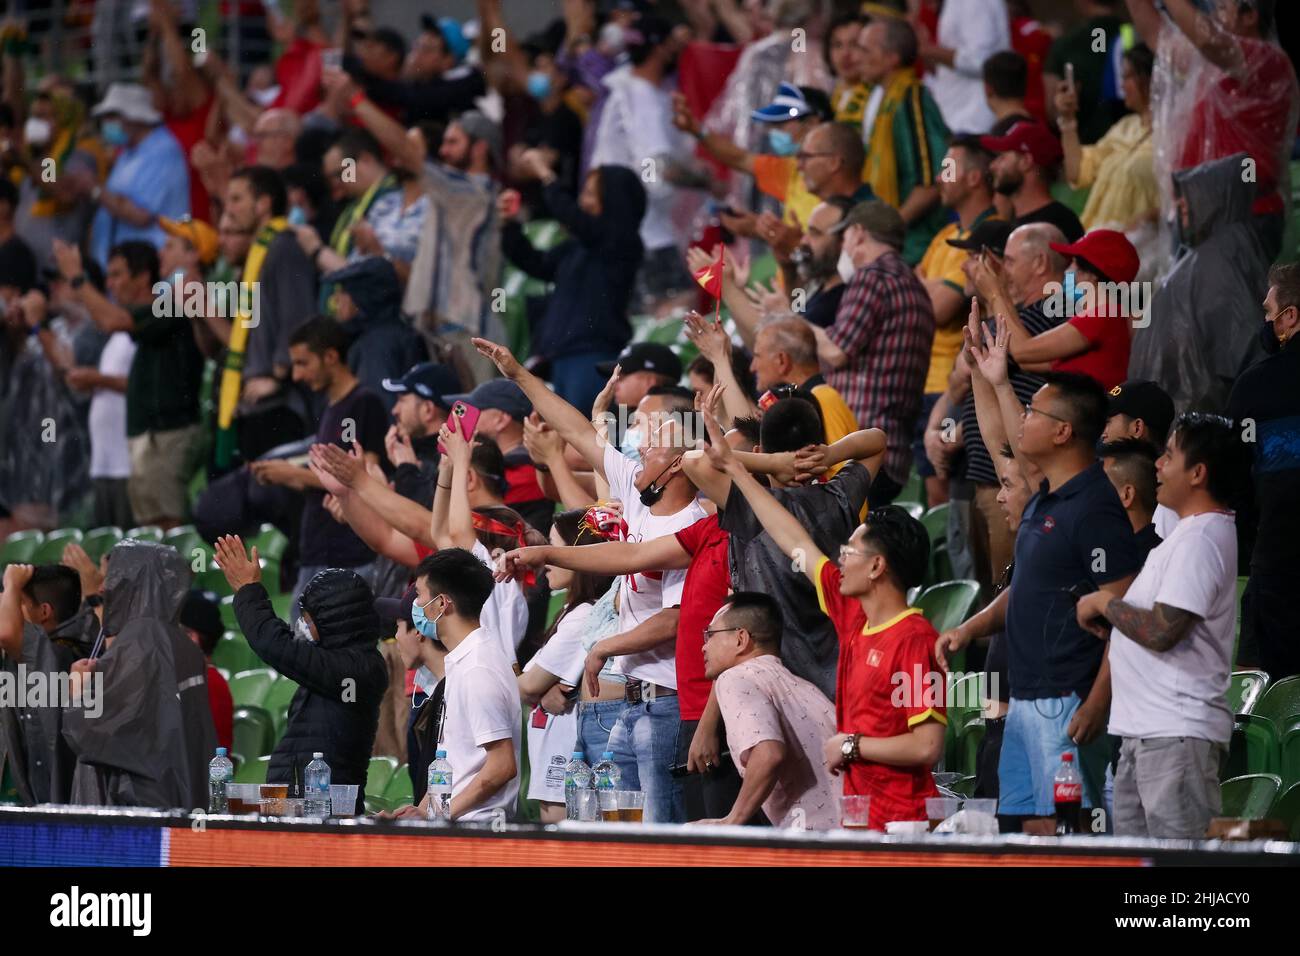 Melbourne, Australie, 27 janvier 2022.Les fans du Vietnam applaudissent lors du match de football de qualification de la coupe du monde entre l'Australie Socceroos et le Vietnam le 27 janvier 2022 à l'AAMI Park de Melbourne, en Australie.Crédit : Dave Helison/Speed Media/Alamy Live News Banque D'Images